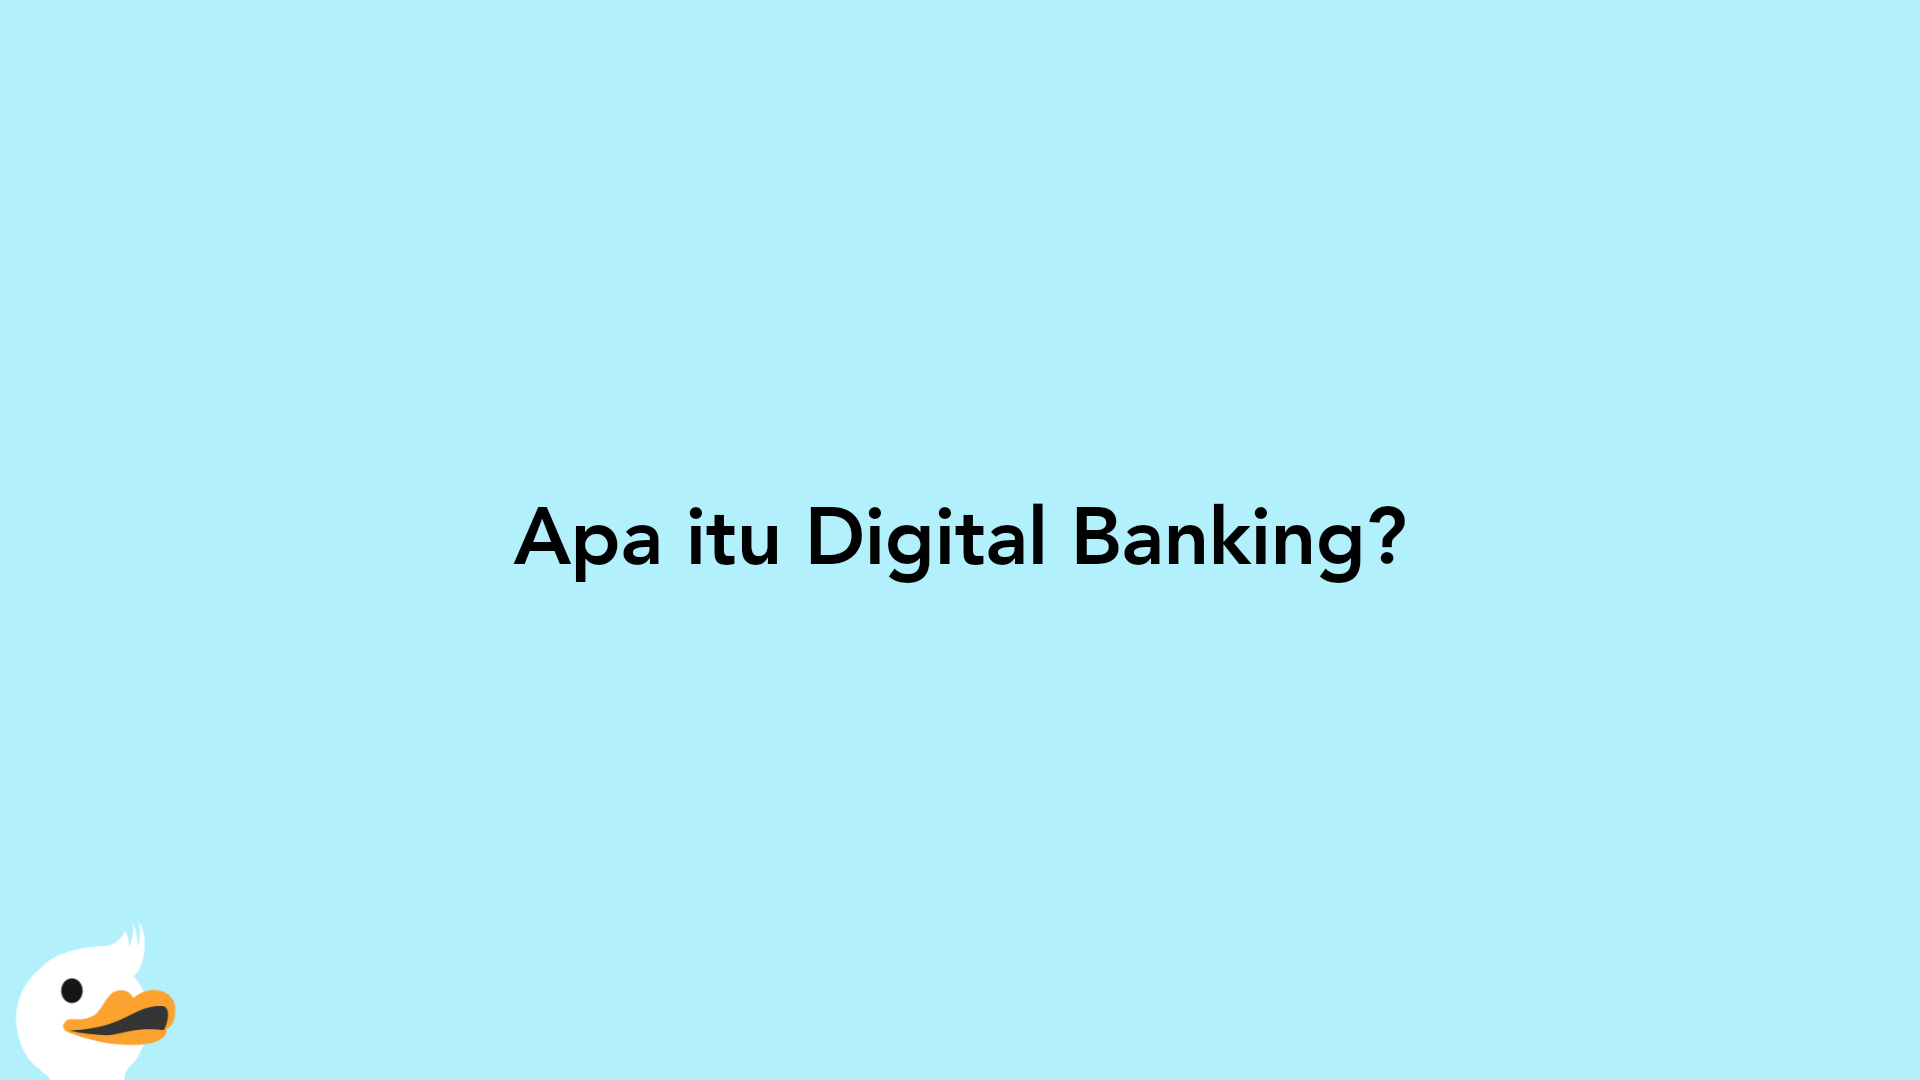 Apa itu Digital Banking?